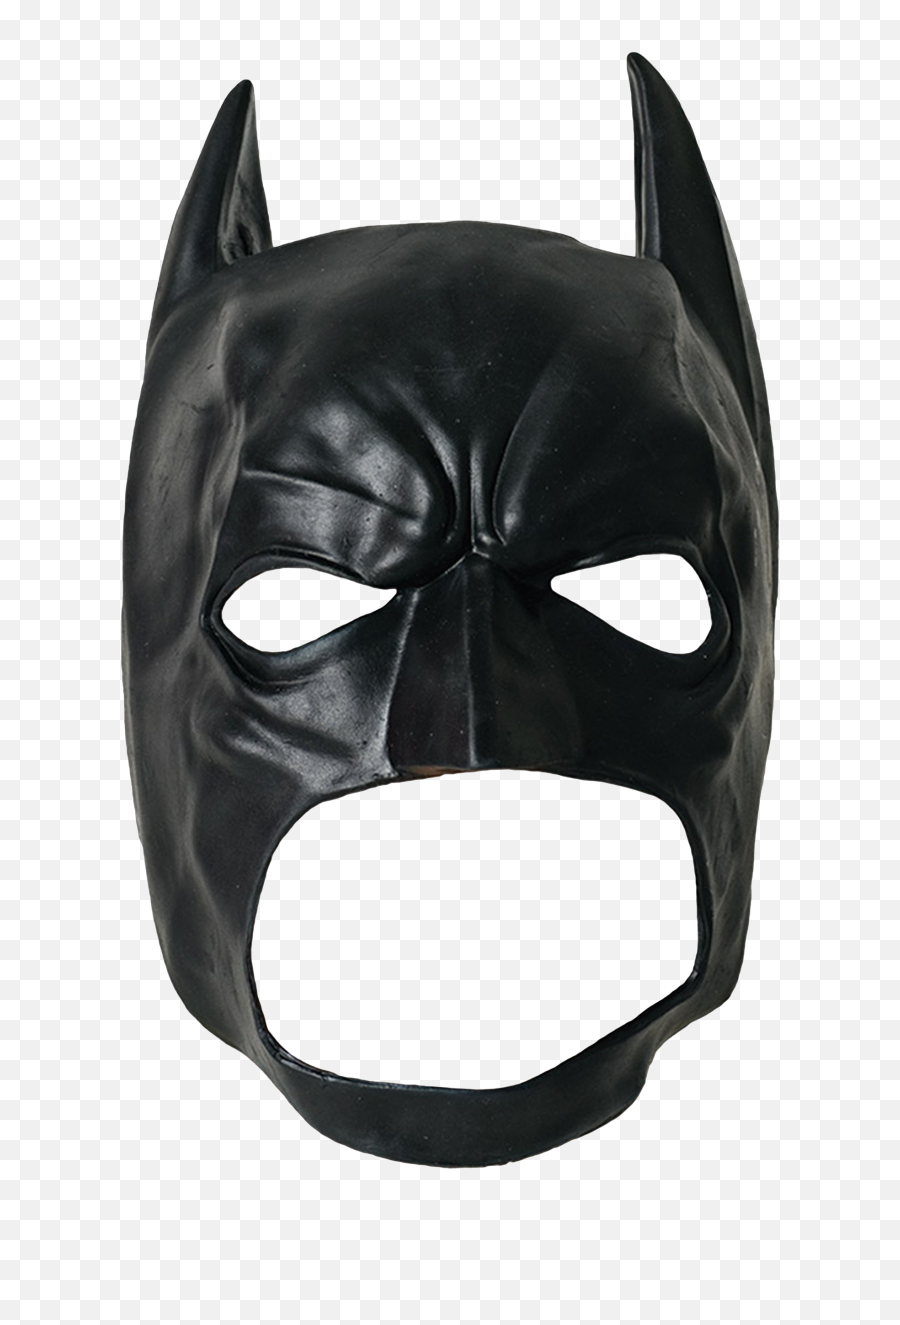 batman mask transparent